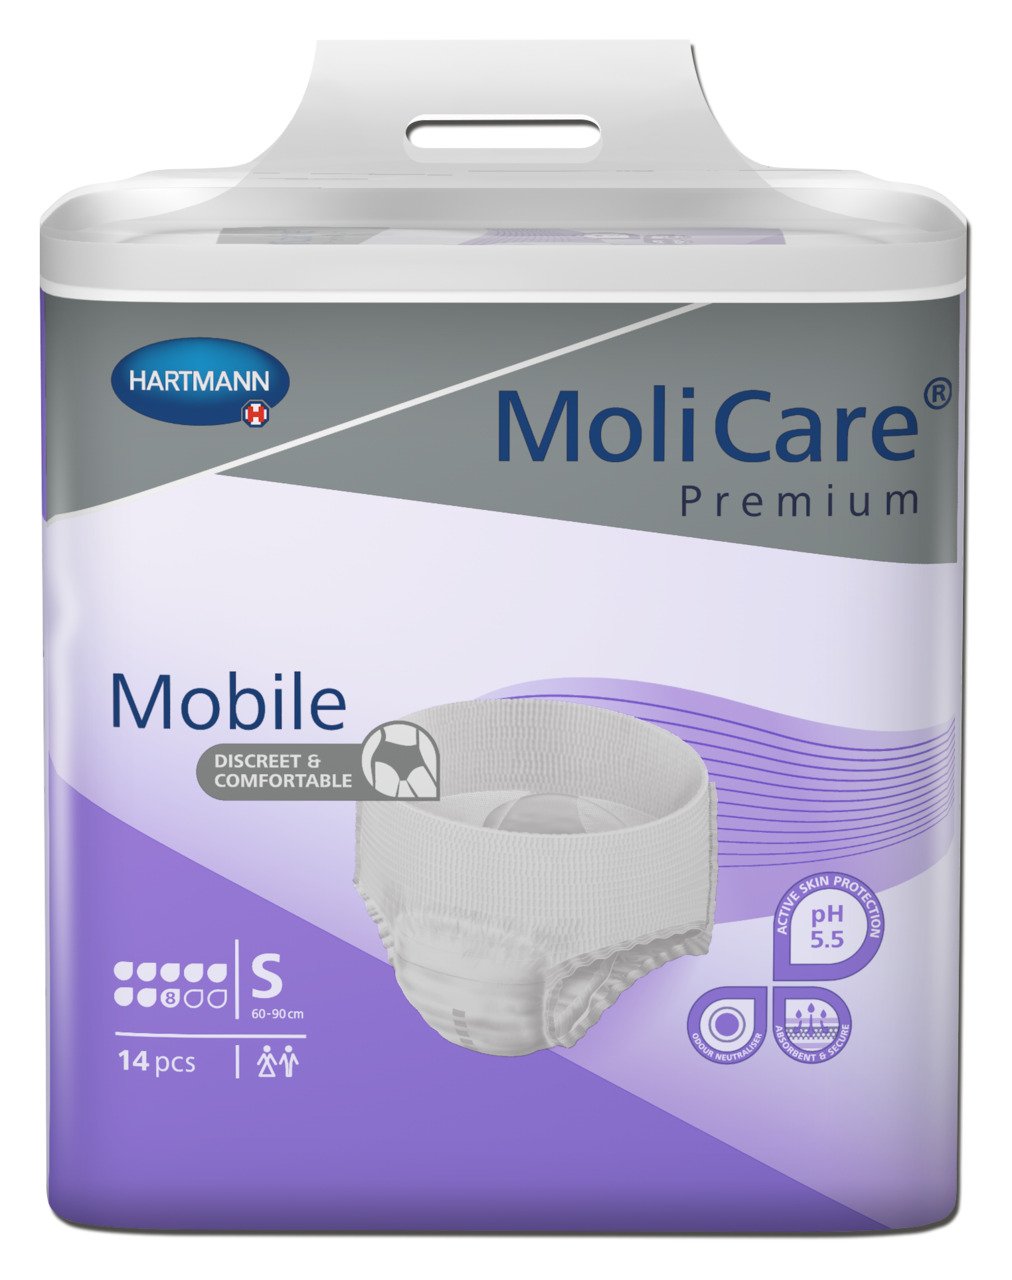 MoliCare Premium Mobile Small 8 drops 56